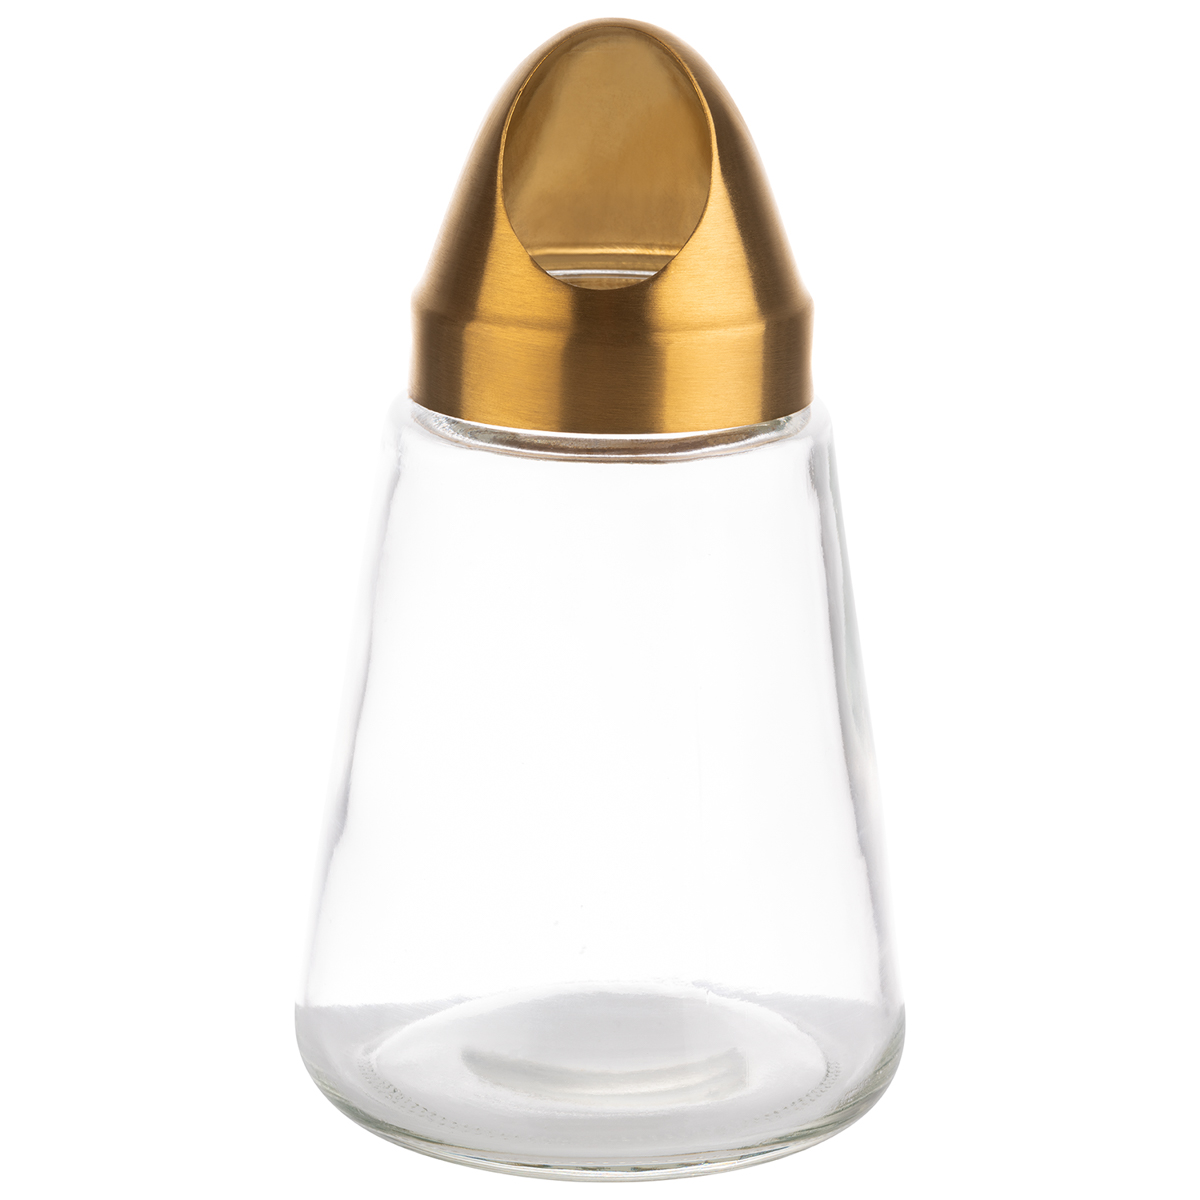 Snackspender, Ø 8,5 cm, H: 15,5 cm, Behälter aus Glas, Schraubdeckel aus Edelstahl, Gold-Look, 350 ml, Öffnung: 3,5 x 2,5 cm (oval)